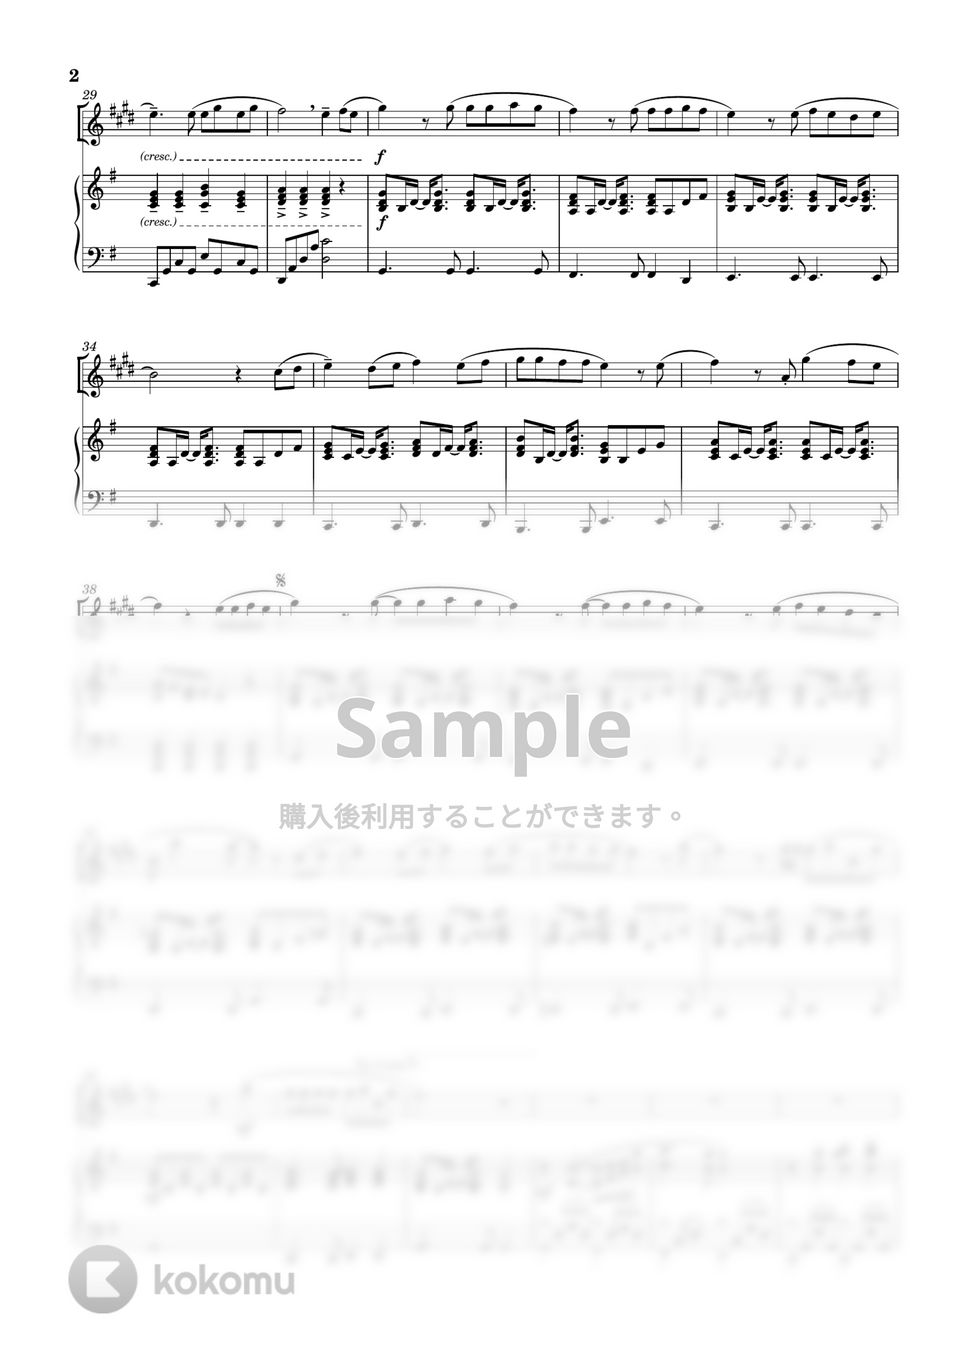 AKB48 - 365日の紙飛行機 (ソロ(in E♭) / ピアノ伴奏) by Tawa